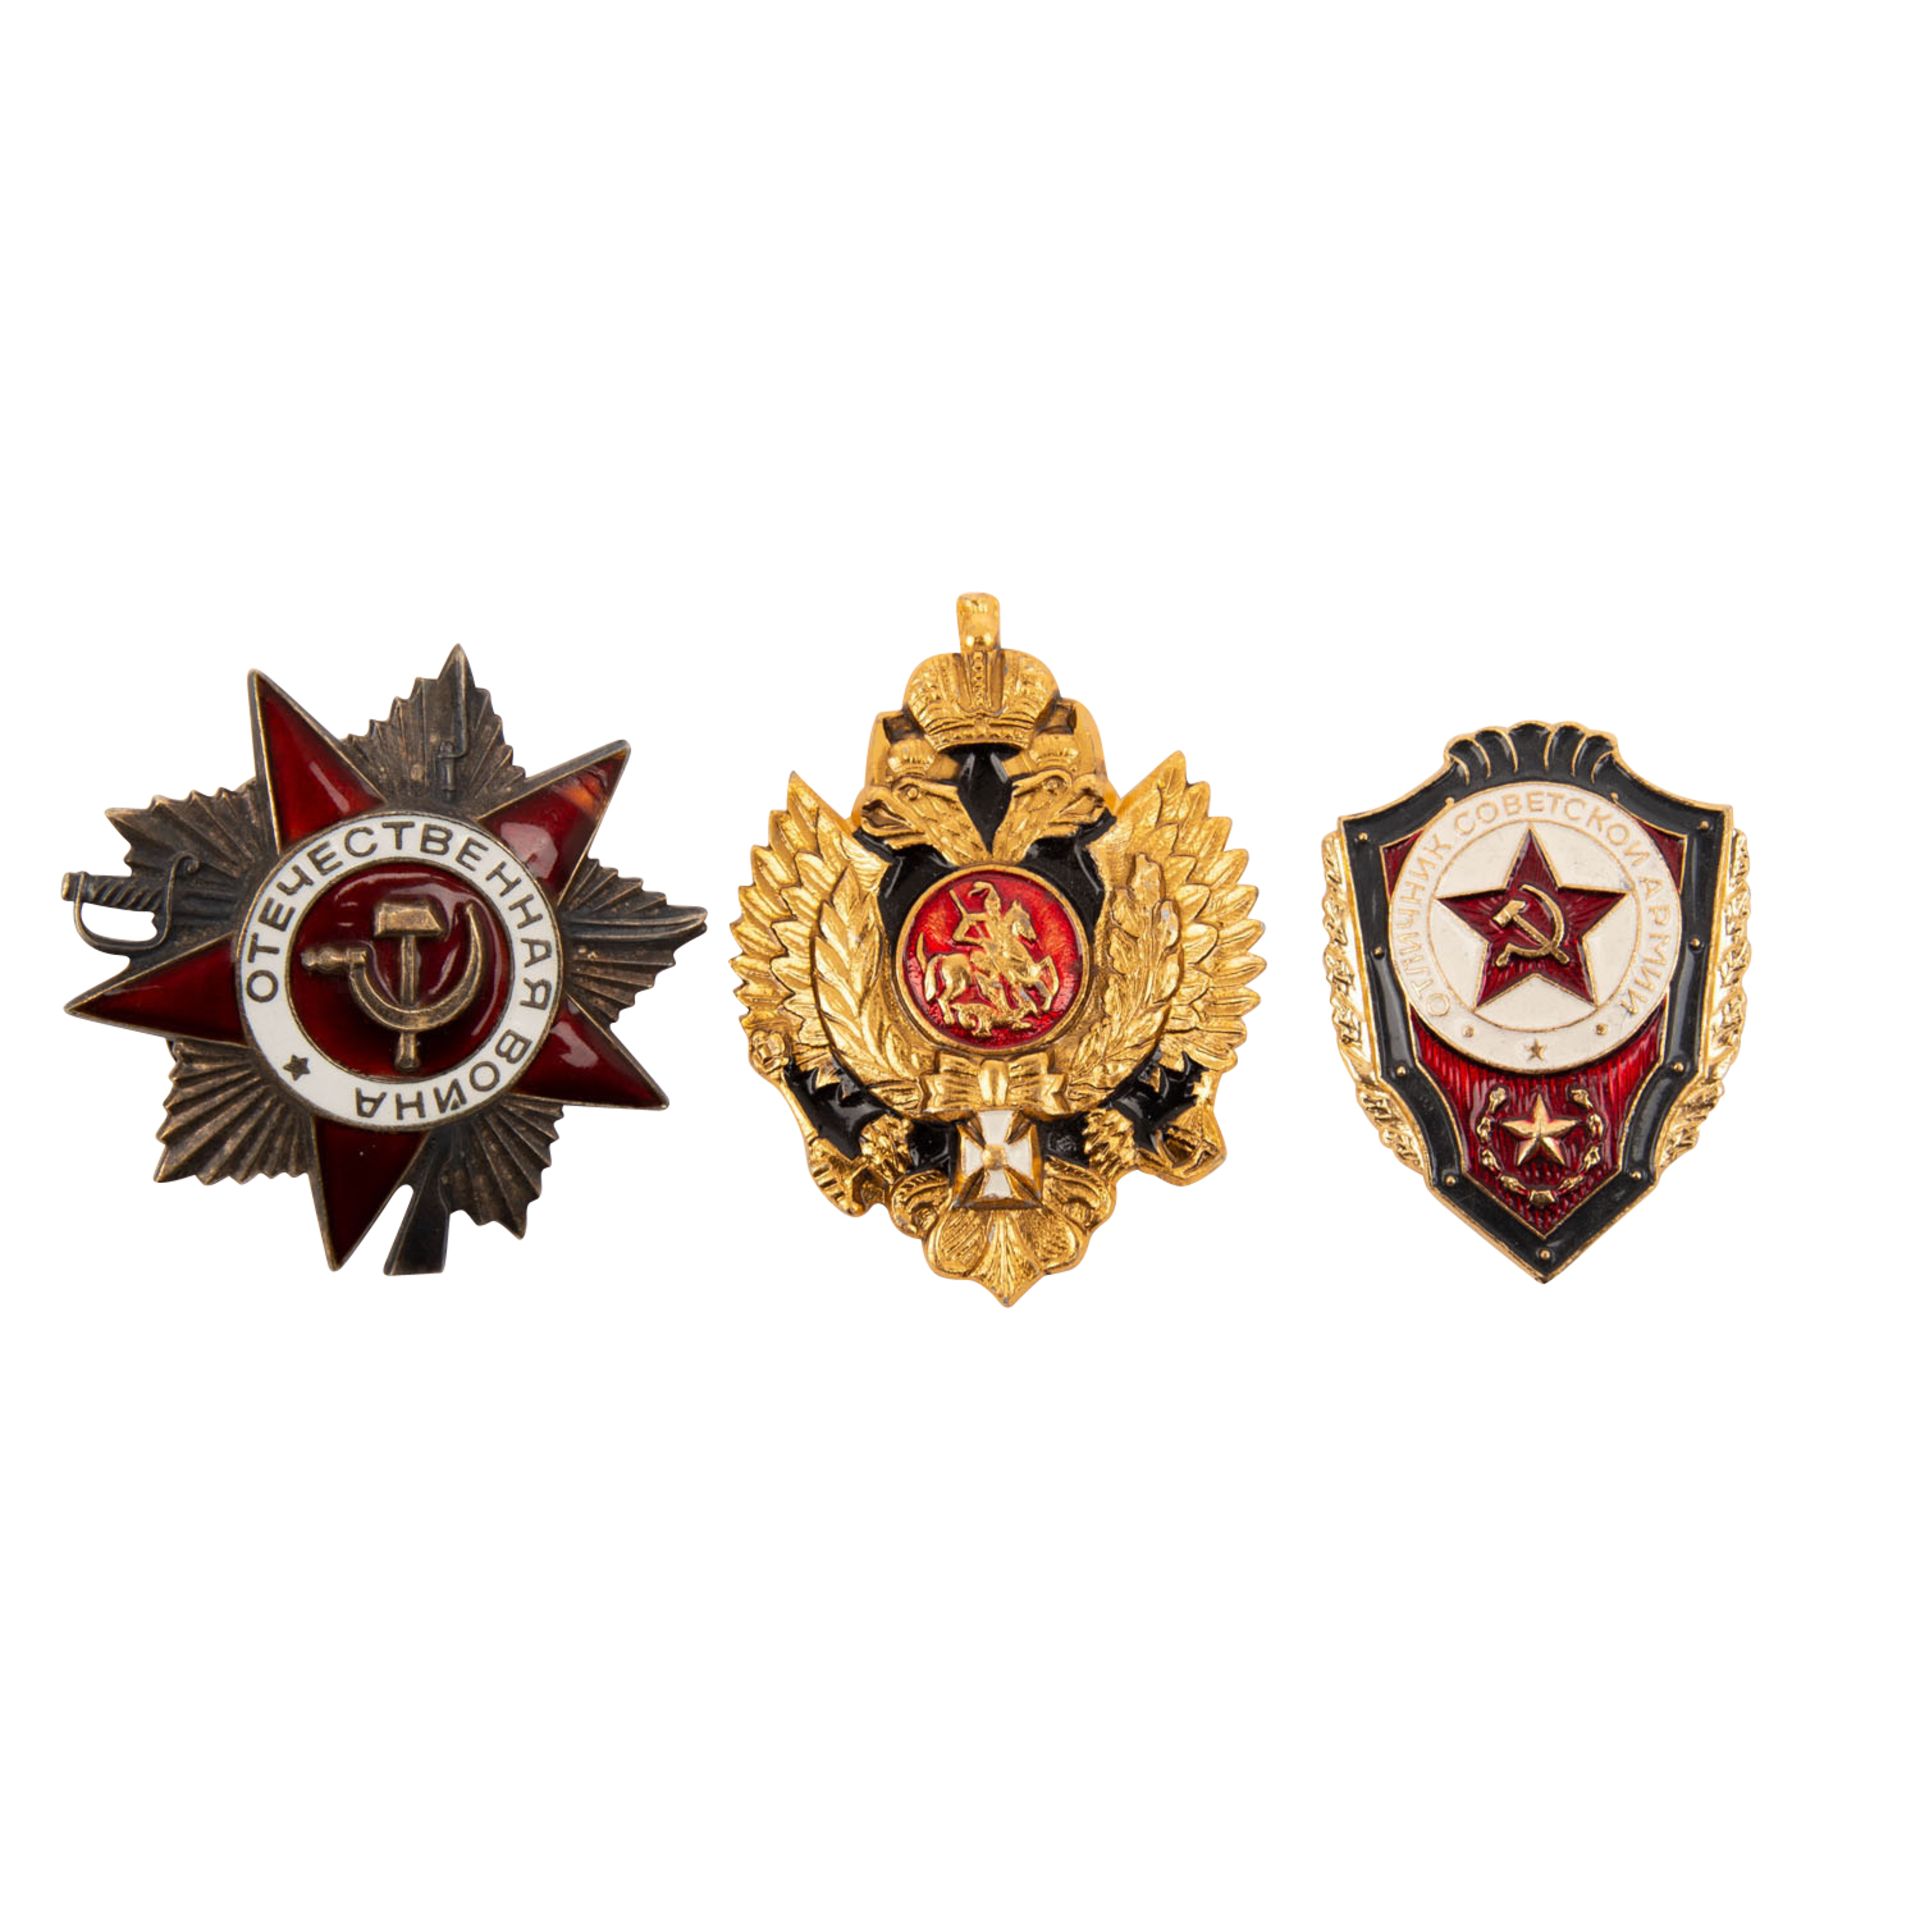 Konvolut mit modernen Ansteckpins zu Autorallyes, russischen Militärabzeichen und mehr. Fundgrube. - Bild 2 aus 6